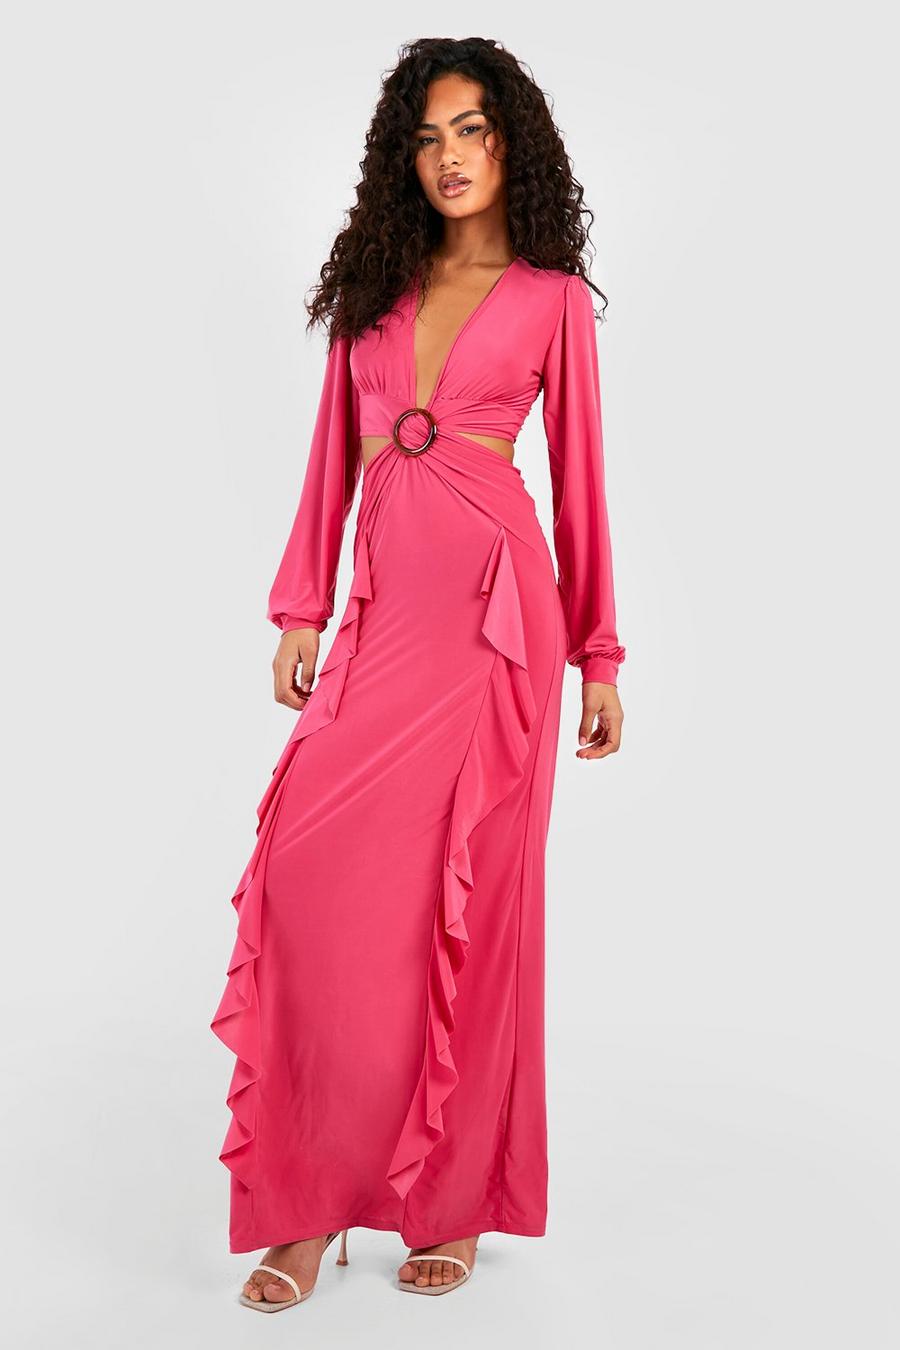 Hot pink Långklänning med låg urringning och volanger